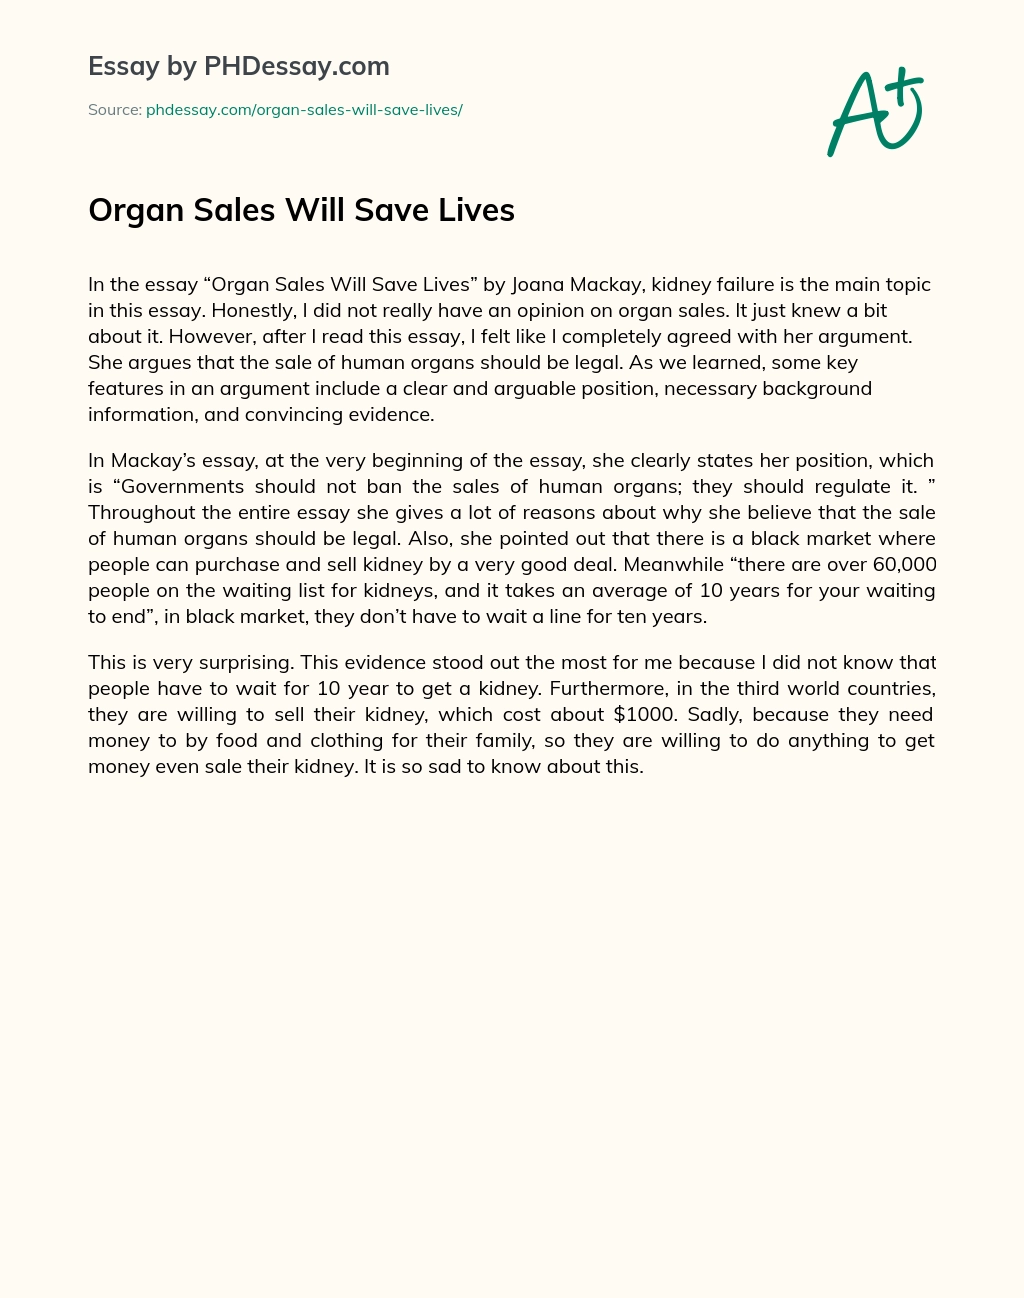 Organ Sales Will Save Lives essay